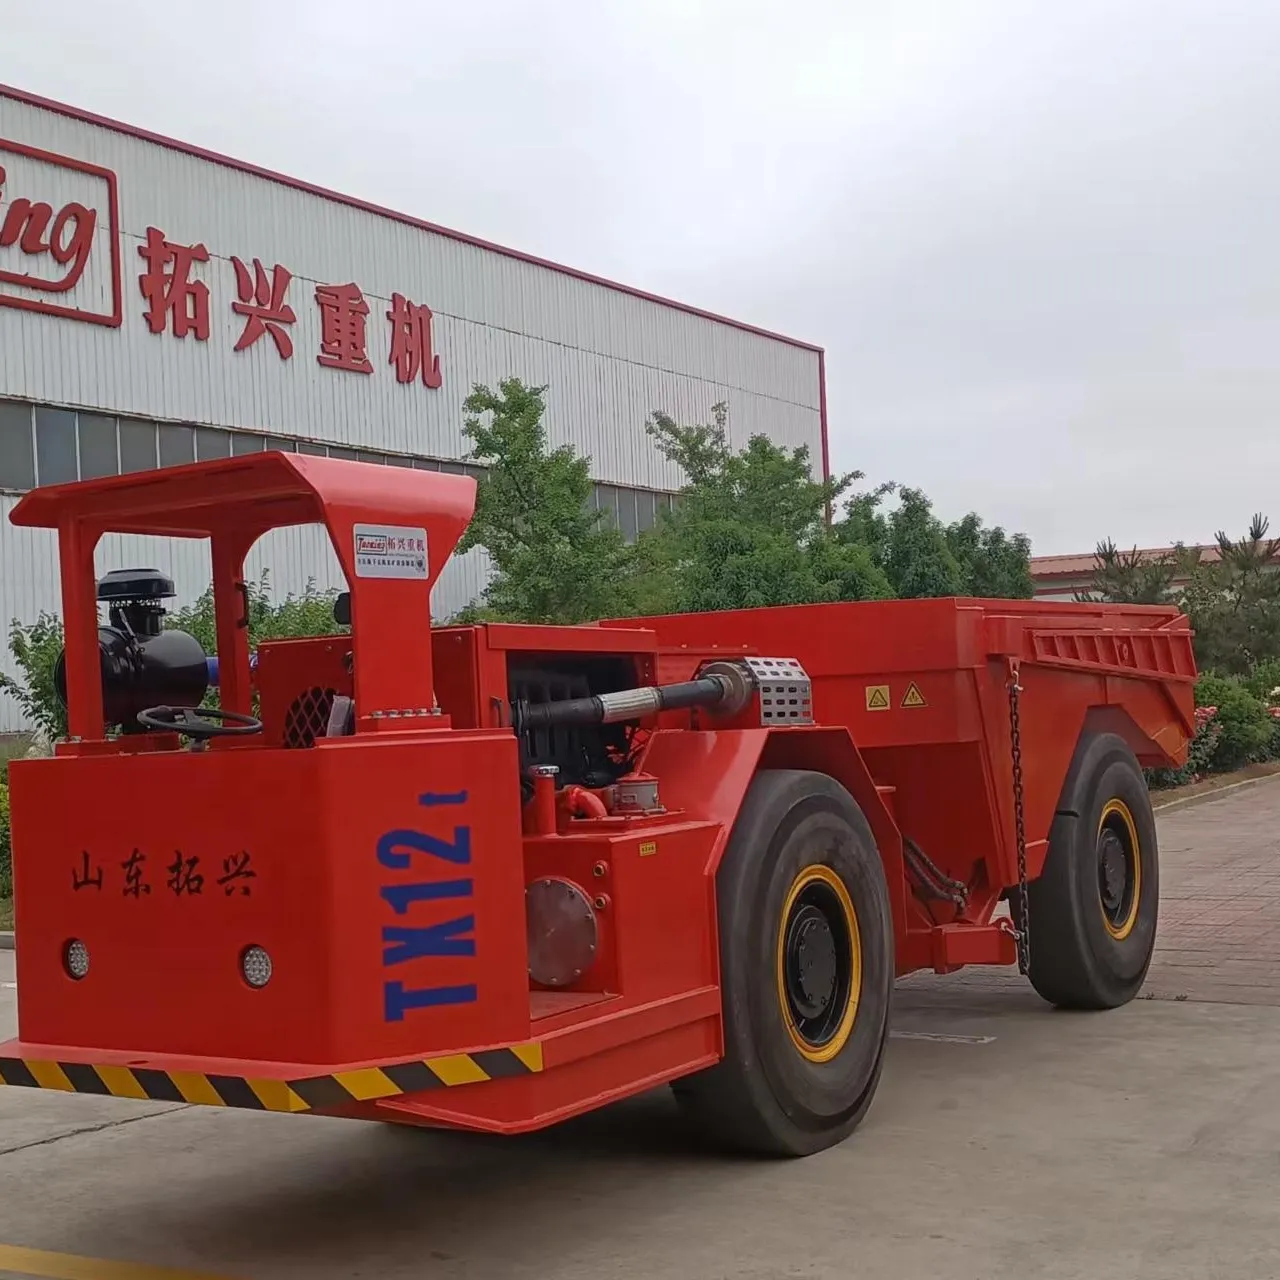 Camión basculante subterráneo Yantai tuoxing de alta eficiencia, con gran rendimiento